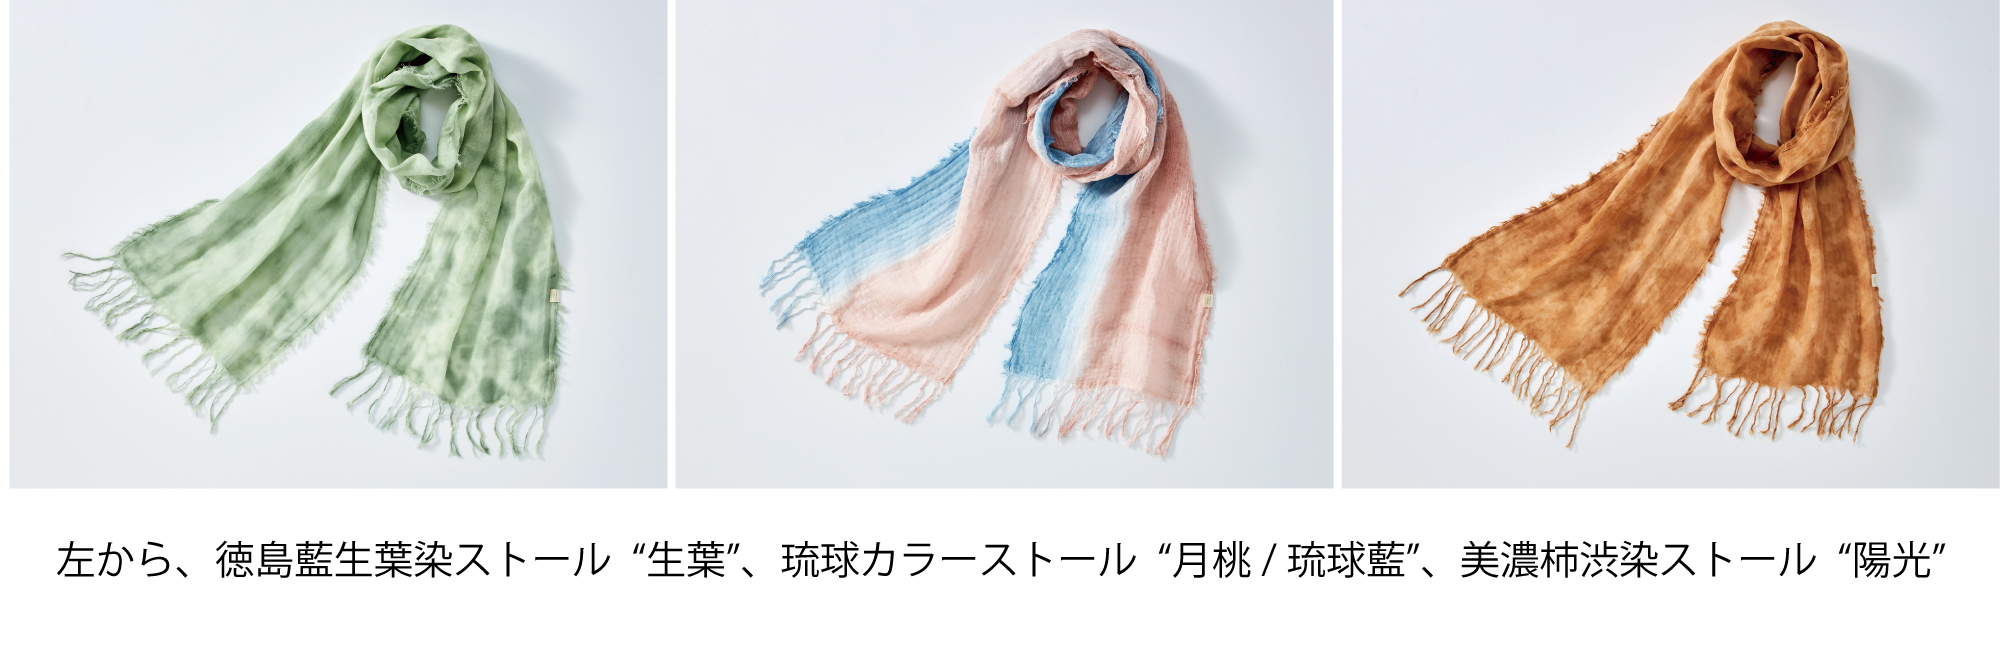 伝統の染色の技と今治タオル製造技術から産まれたストール「日本のいい ...